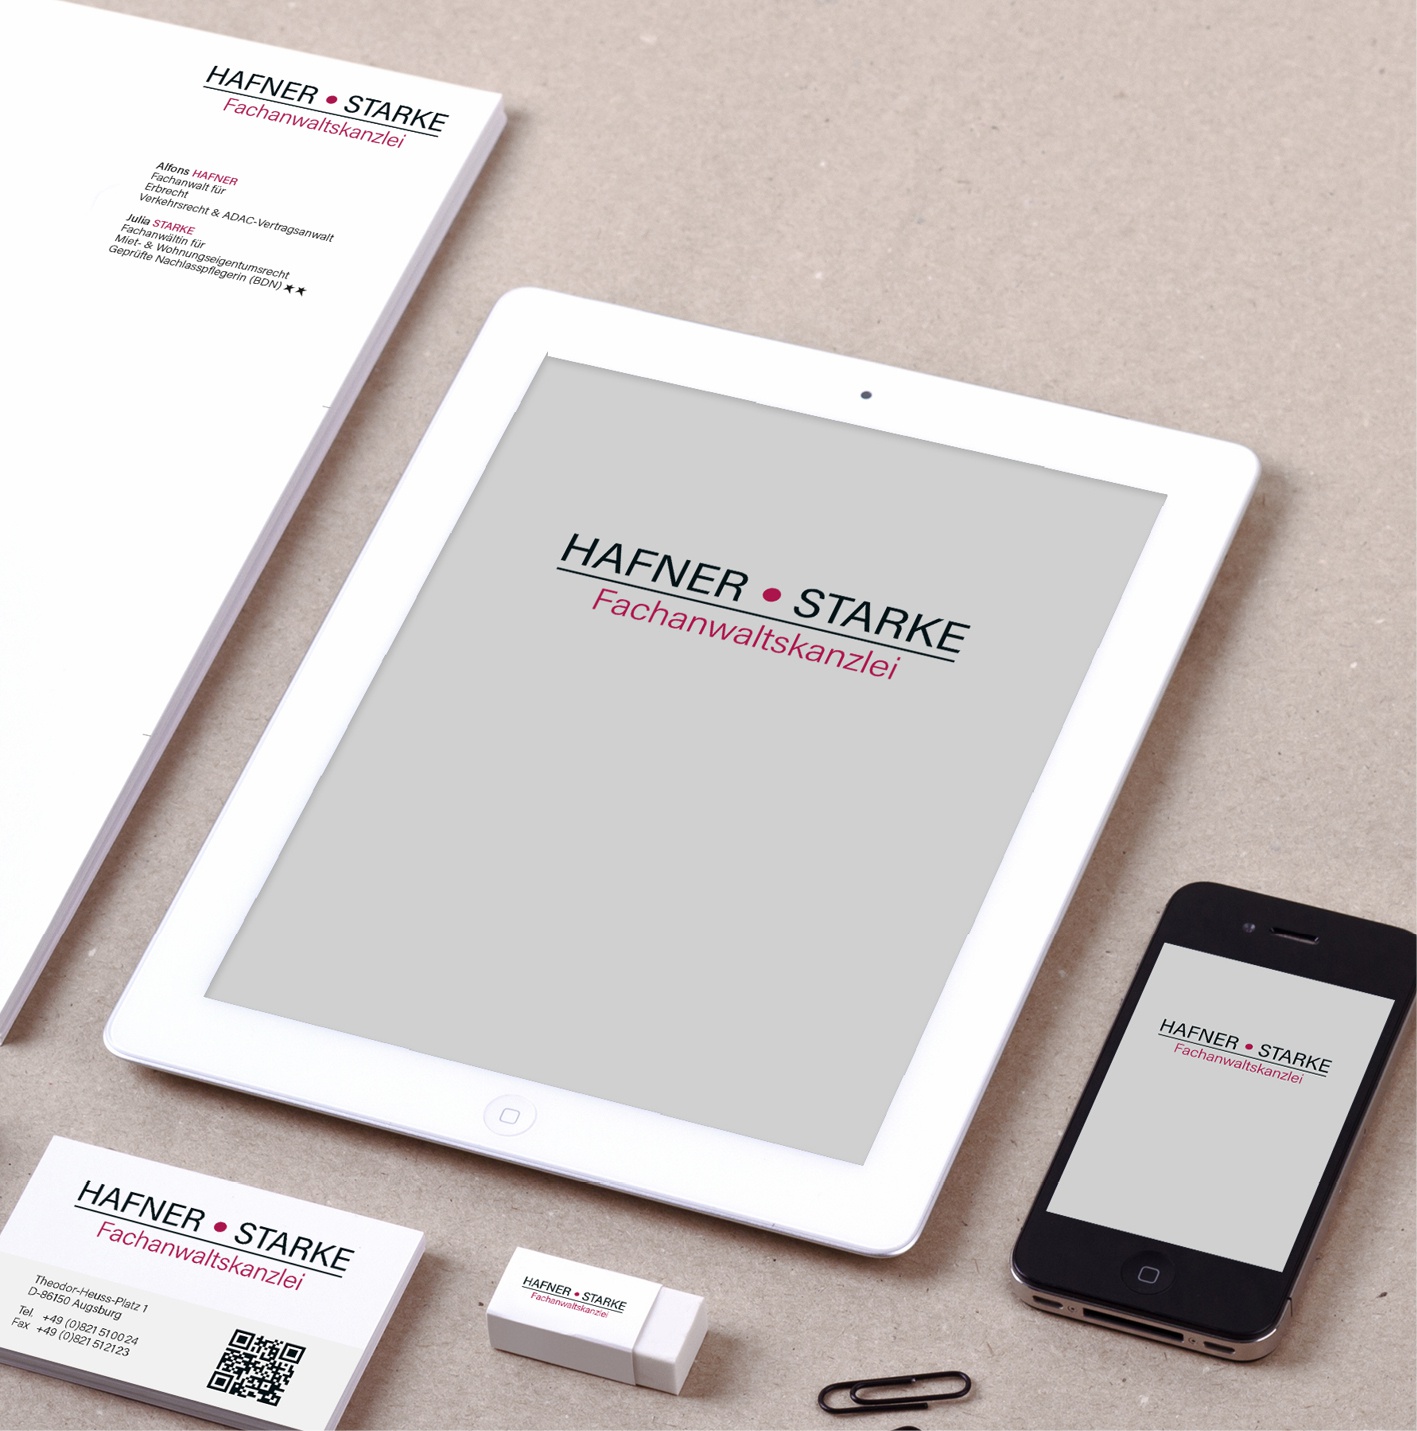 Hafner Starke | Fachanwaltskanzlei: Redesign Logo, Neu-Anpassung und Überarbeitung des Corporate Design, Briefpapier und Wordvorlagen, Visitenkarte, Firmenschild, Ideengebung Website